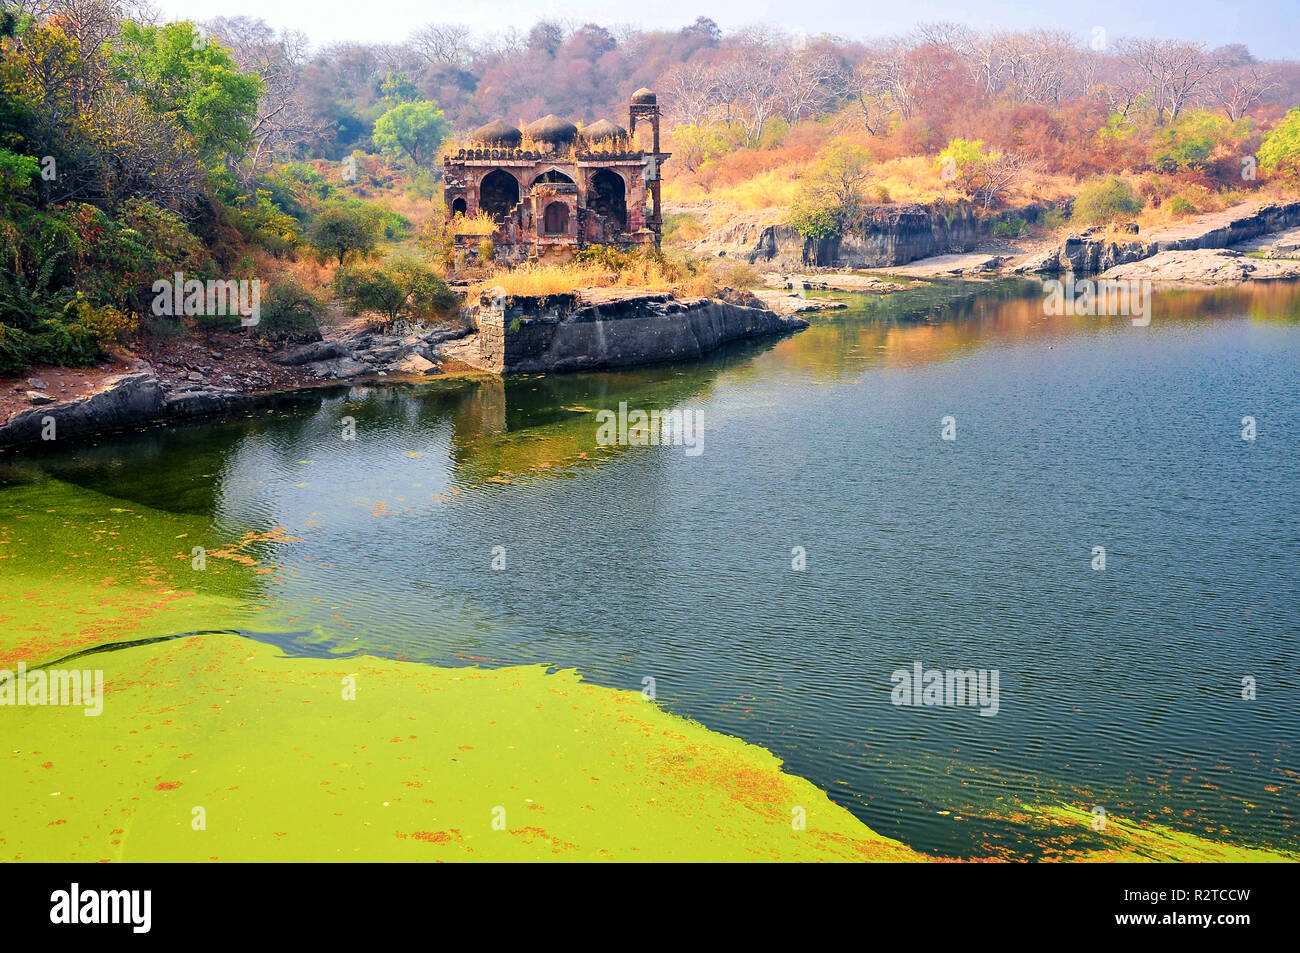 Lumière douce, les couleurs chaudes, magique scène au bord du lac. Les ruines de Badal Mahal ou le Palais des Nuages, Rani Kund Lake, Fort de Ranthambore, Rajasthan, Inde Banque D'Images